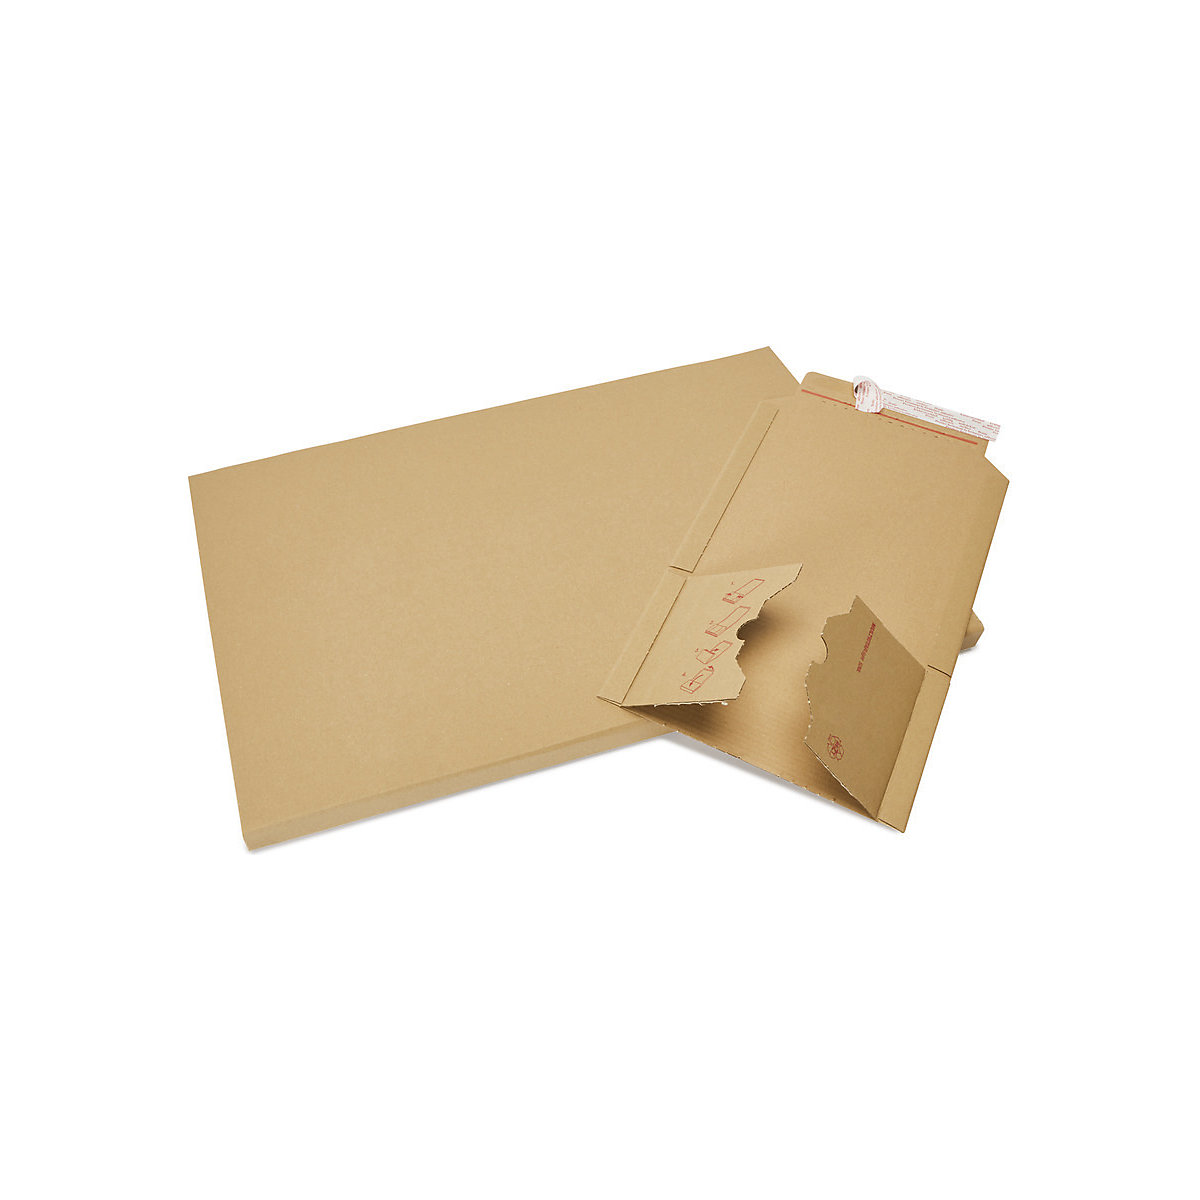 Imballaggio per libri Multistar – flow, marrone, lungh. x largh. 217 x 155 mm, a partire da 250 pz.-1